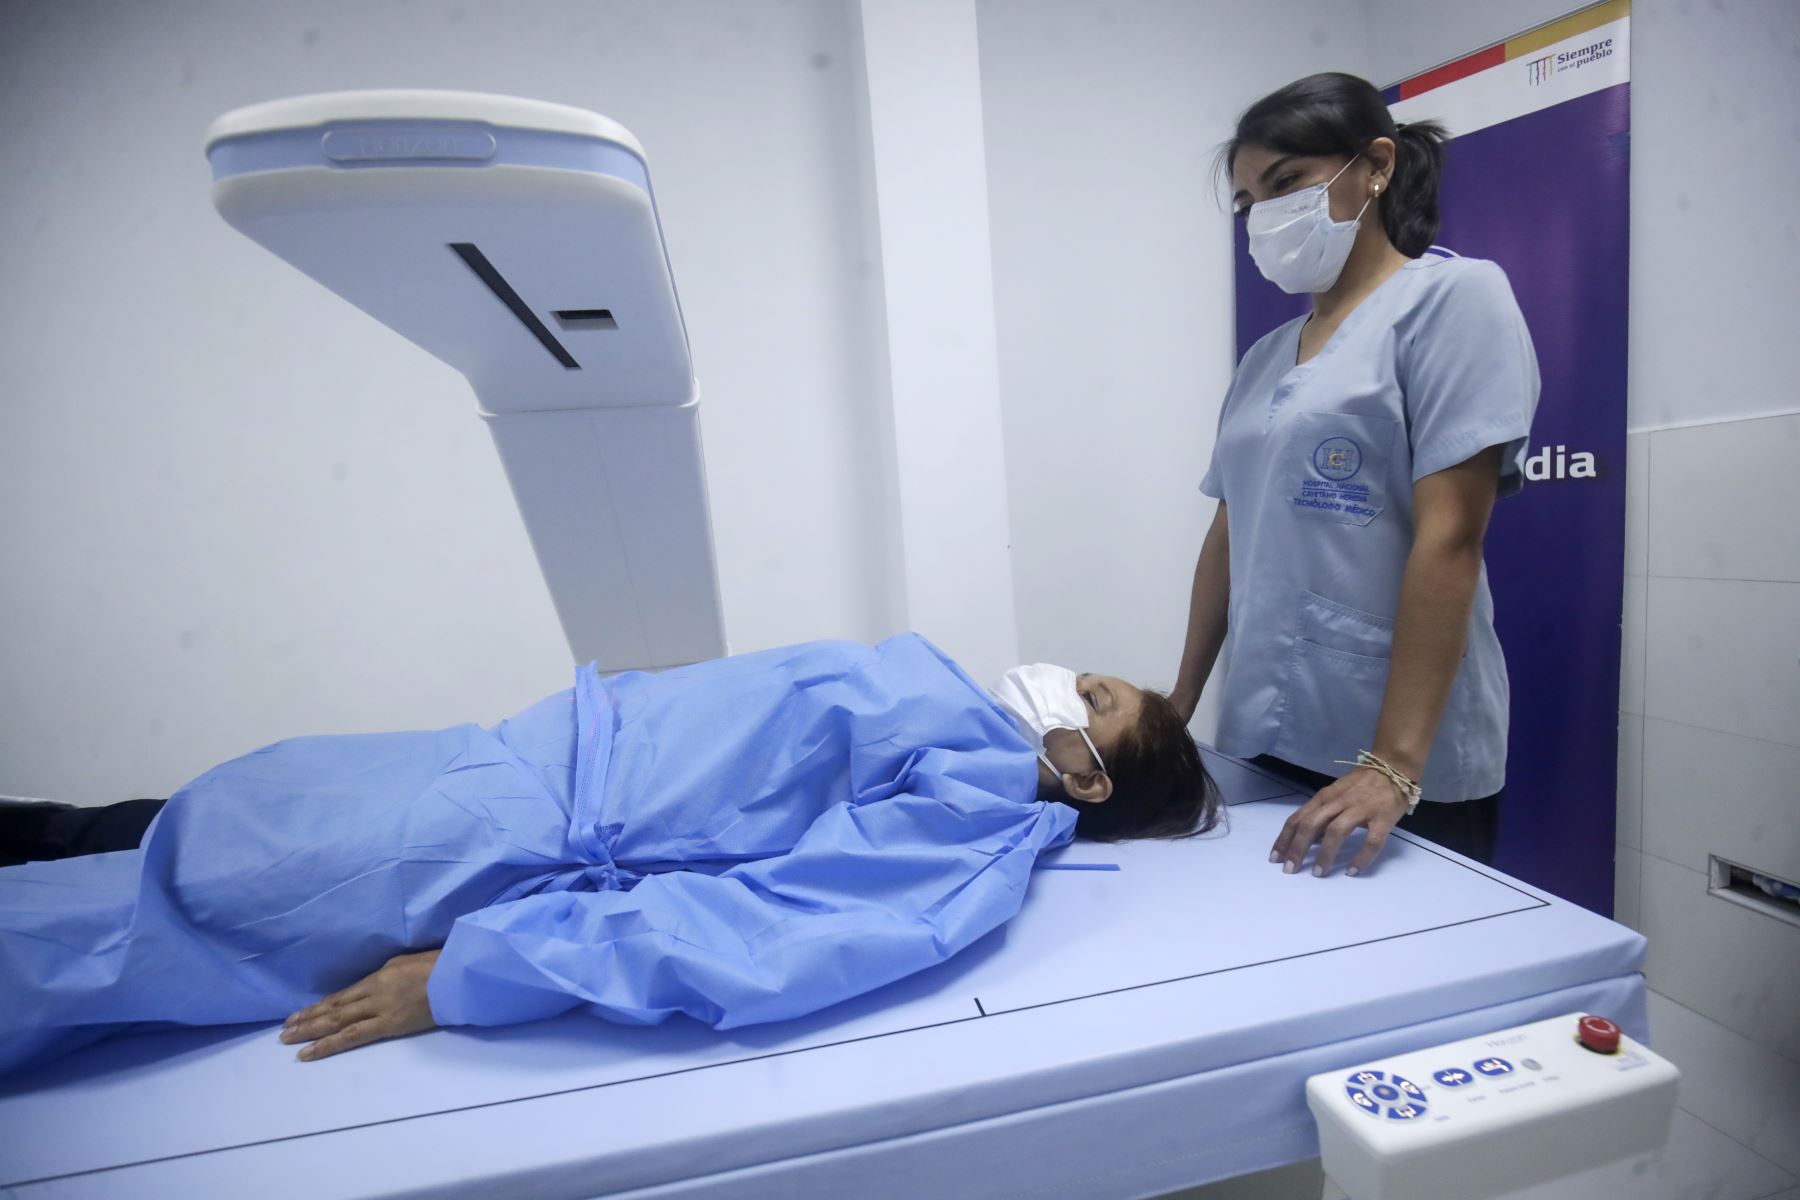 Equipo de densitometría ósea en el hospital Cayetano Heredia, el cual beneficiará a los pacientes de Lima Norte.

Foto: ANDINA/Juan Carlos Guzmán Negrini.